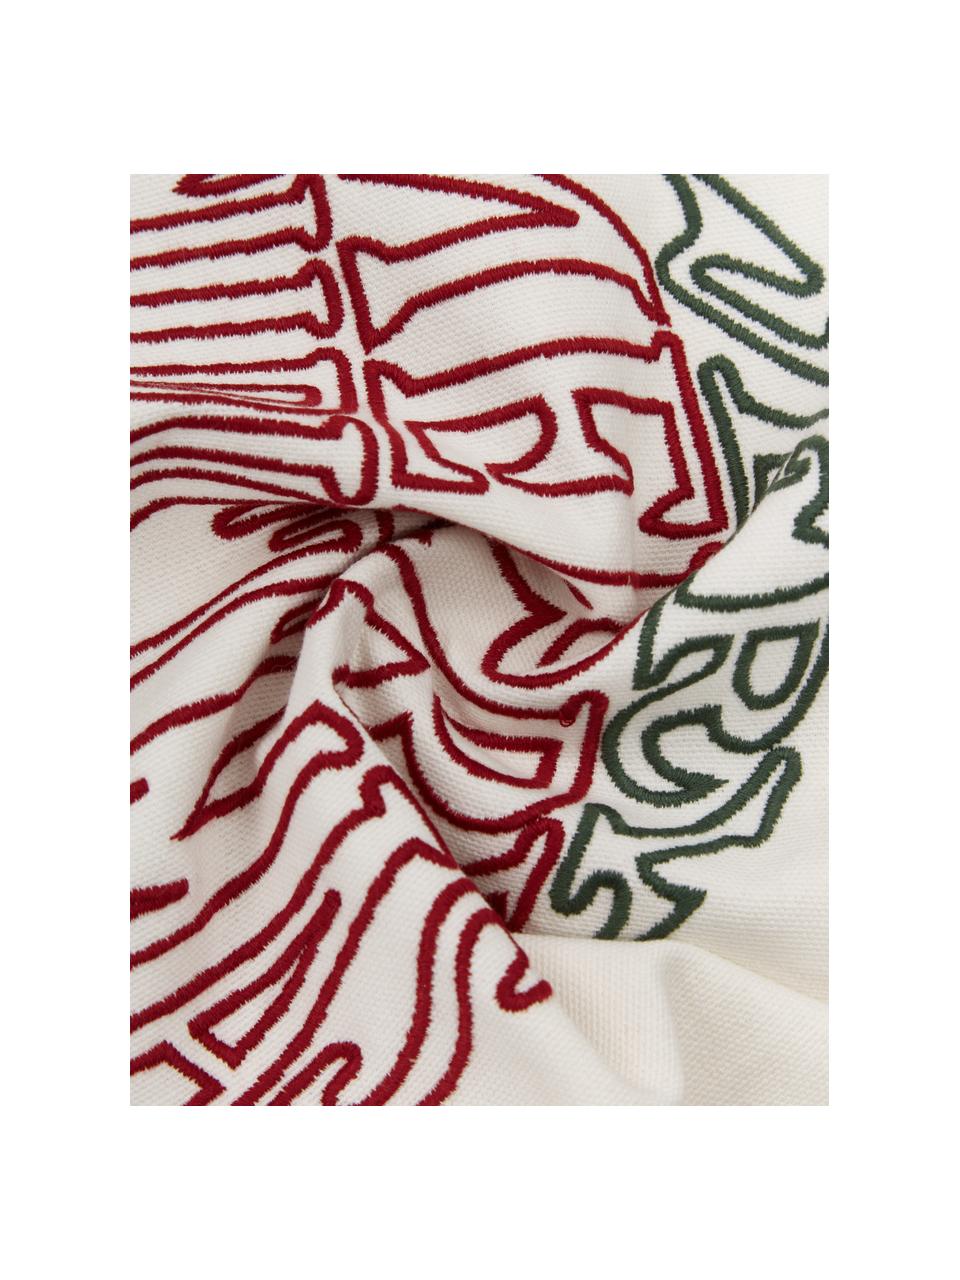 Bestickte Kissenhülle Finn mit winterlichem Motiv, 100 % Baumwolle, Cremeweiß, Rot, Dunkelgrün, B 45 x L 45 cm